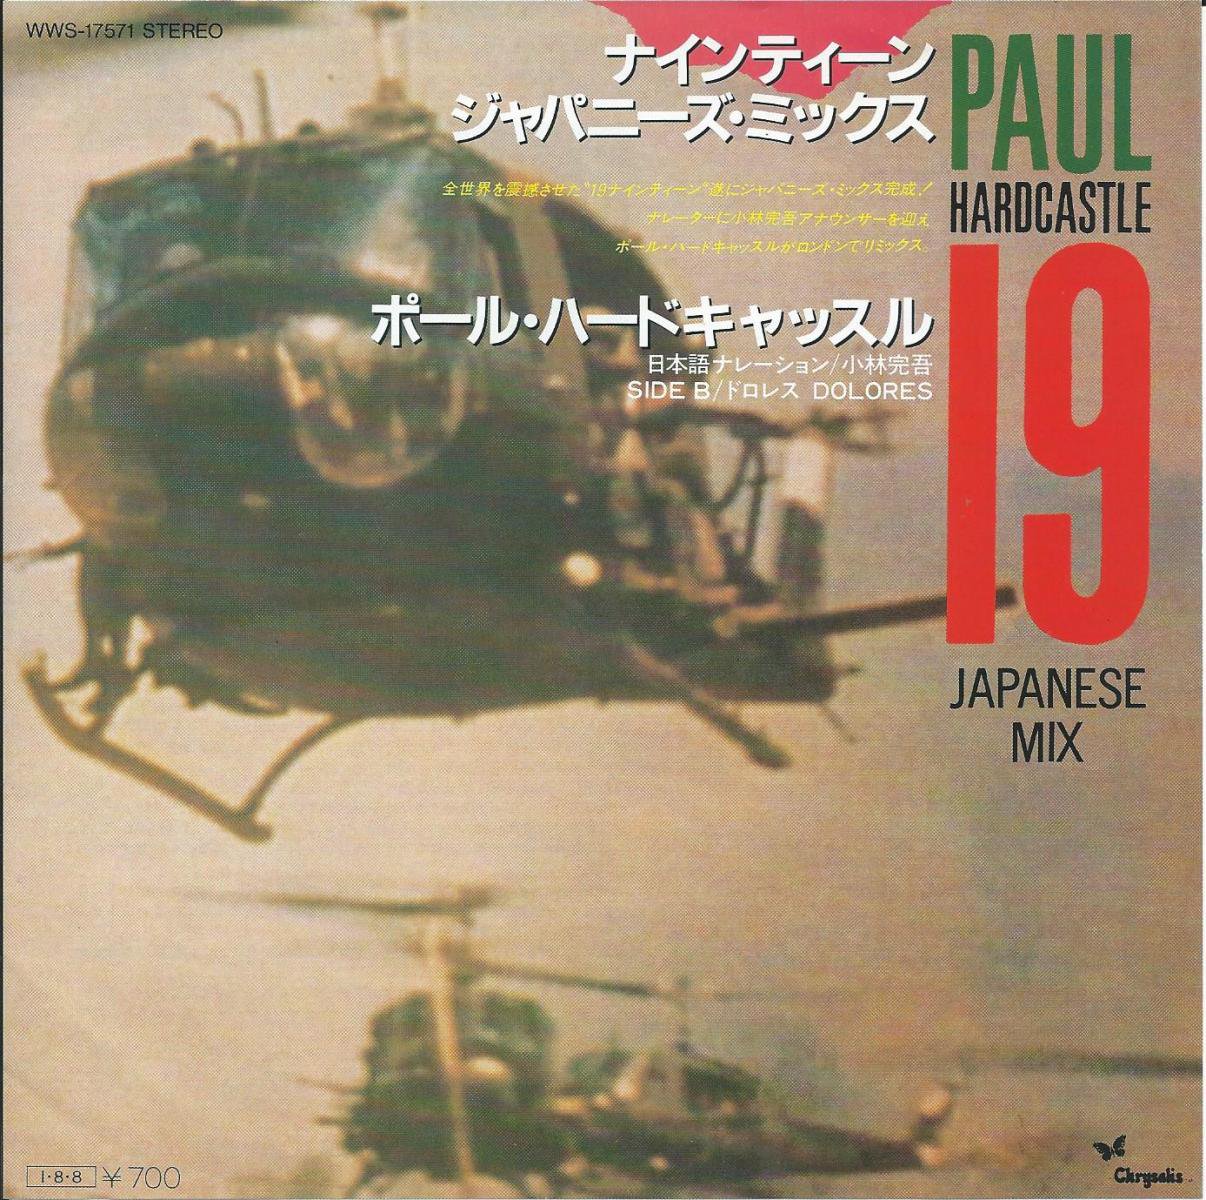 ポール・ハードキャッスル PAUL HARDCASTLE / ナインティーン ジャパニーズ・ミックス 19 JAPANESE MIX (7) -  HIP TANK RECORDS